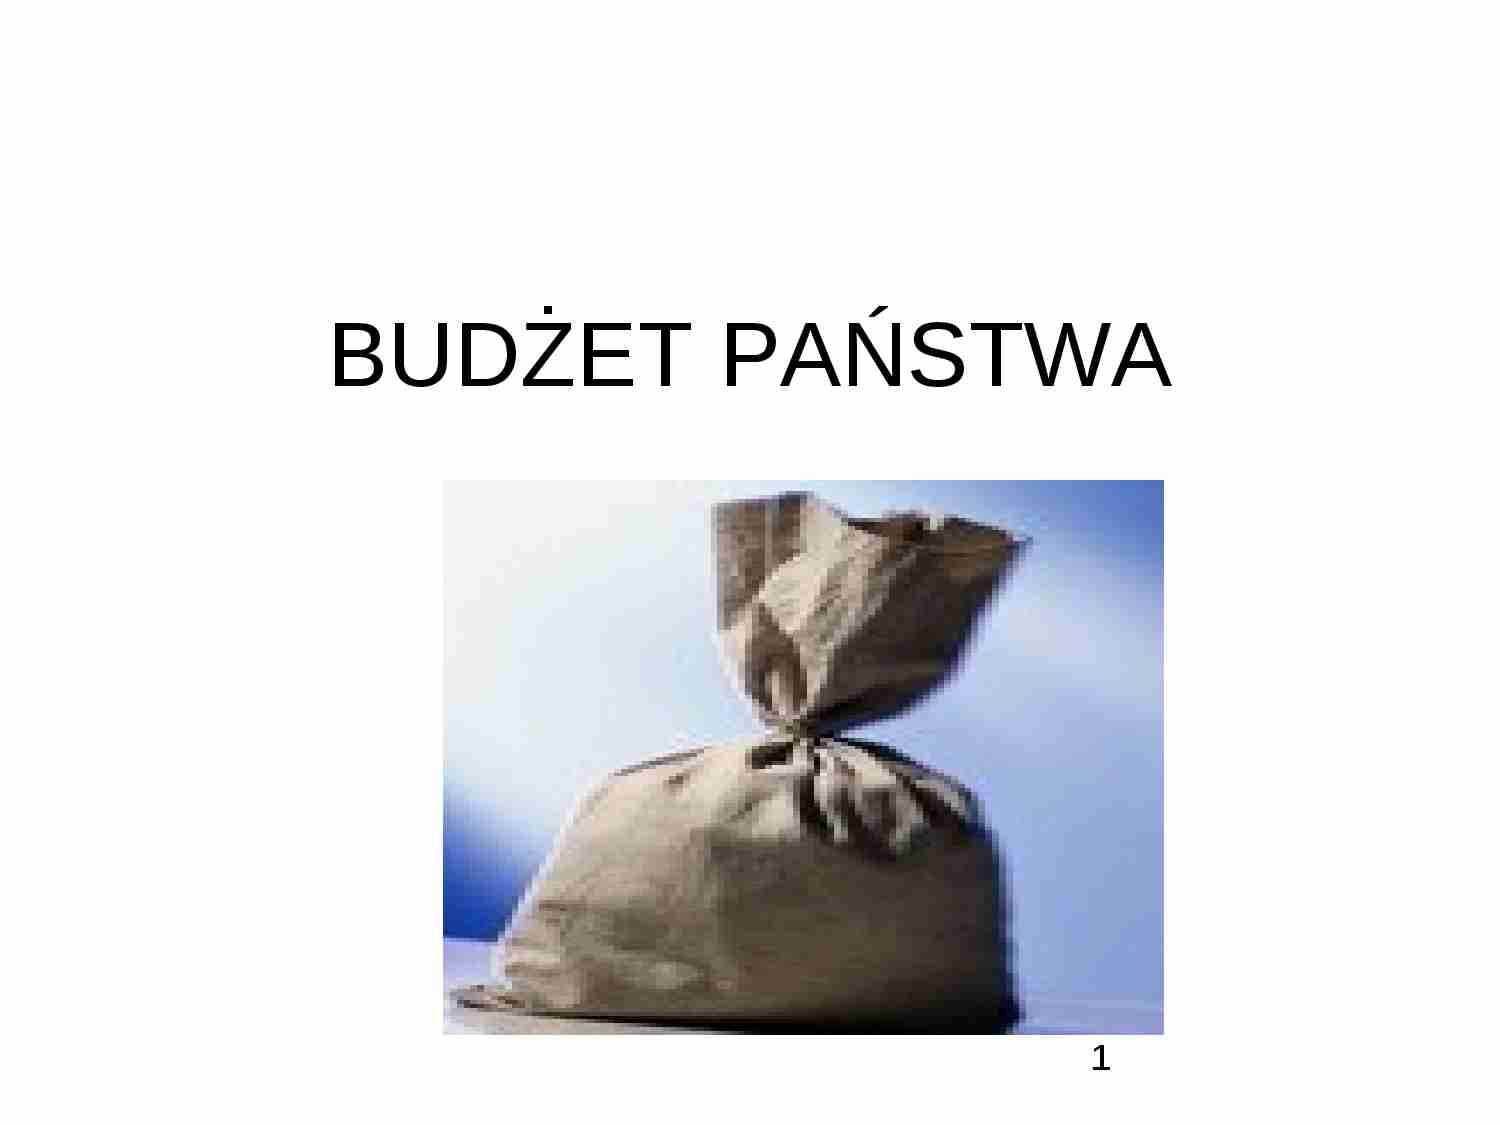 Budżet państwa - dochody i wydatki - strona 1